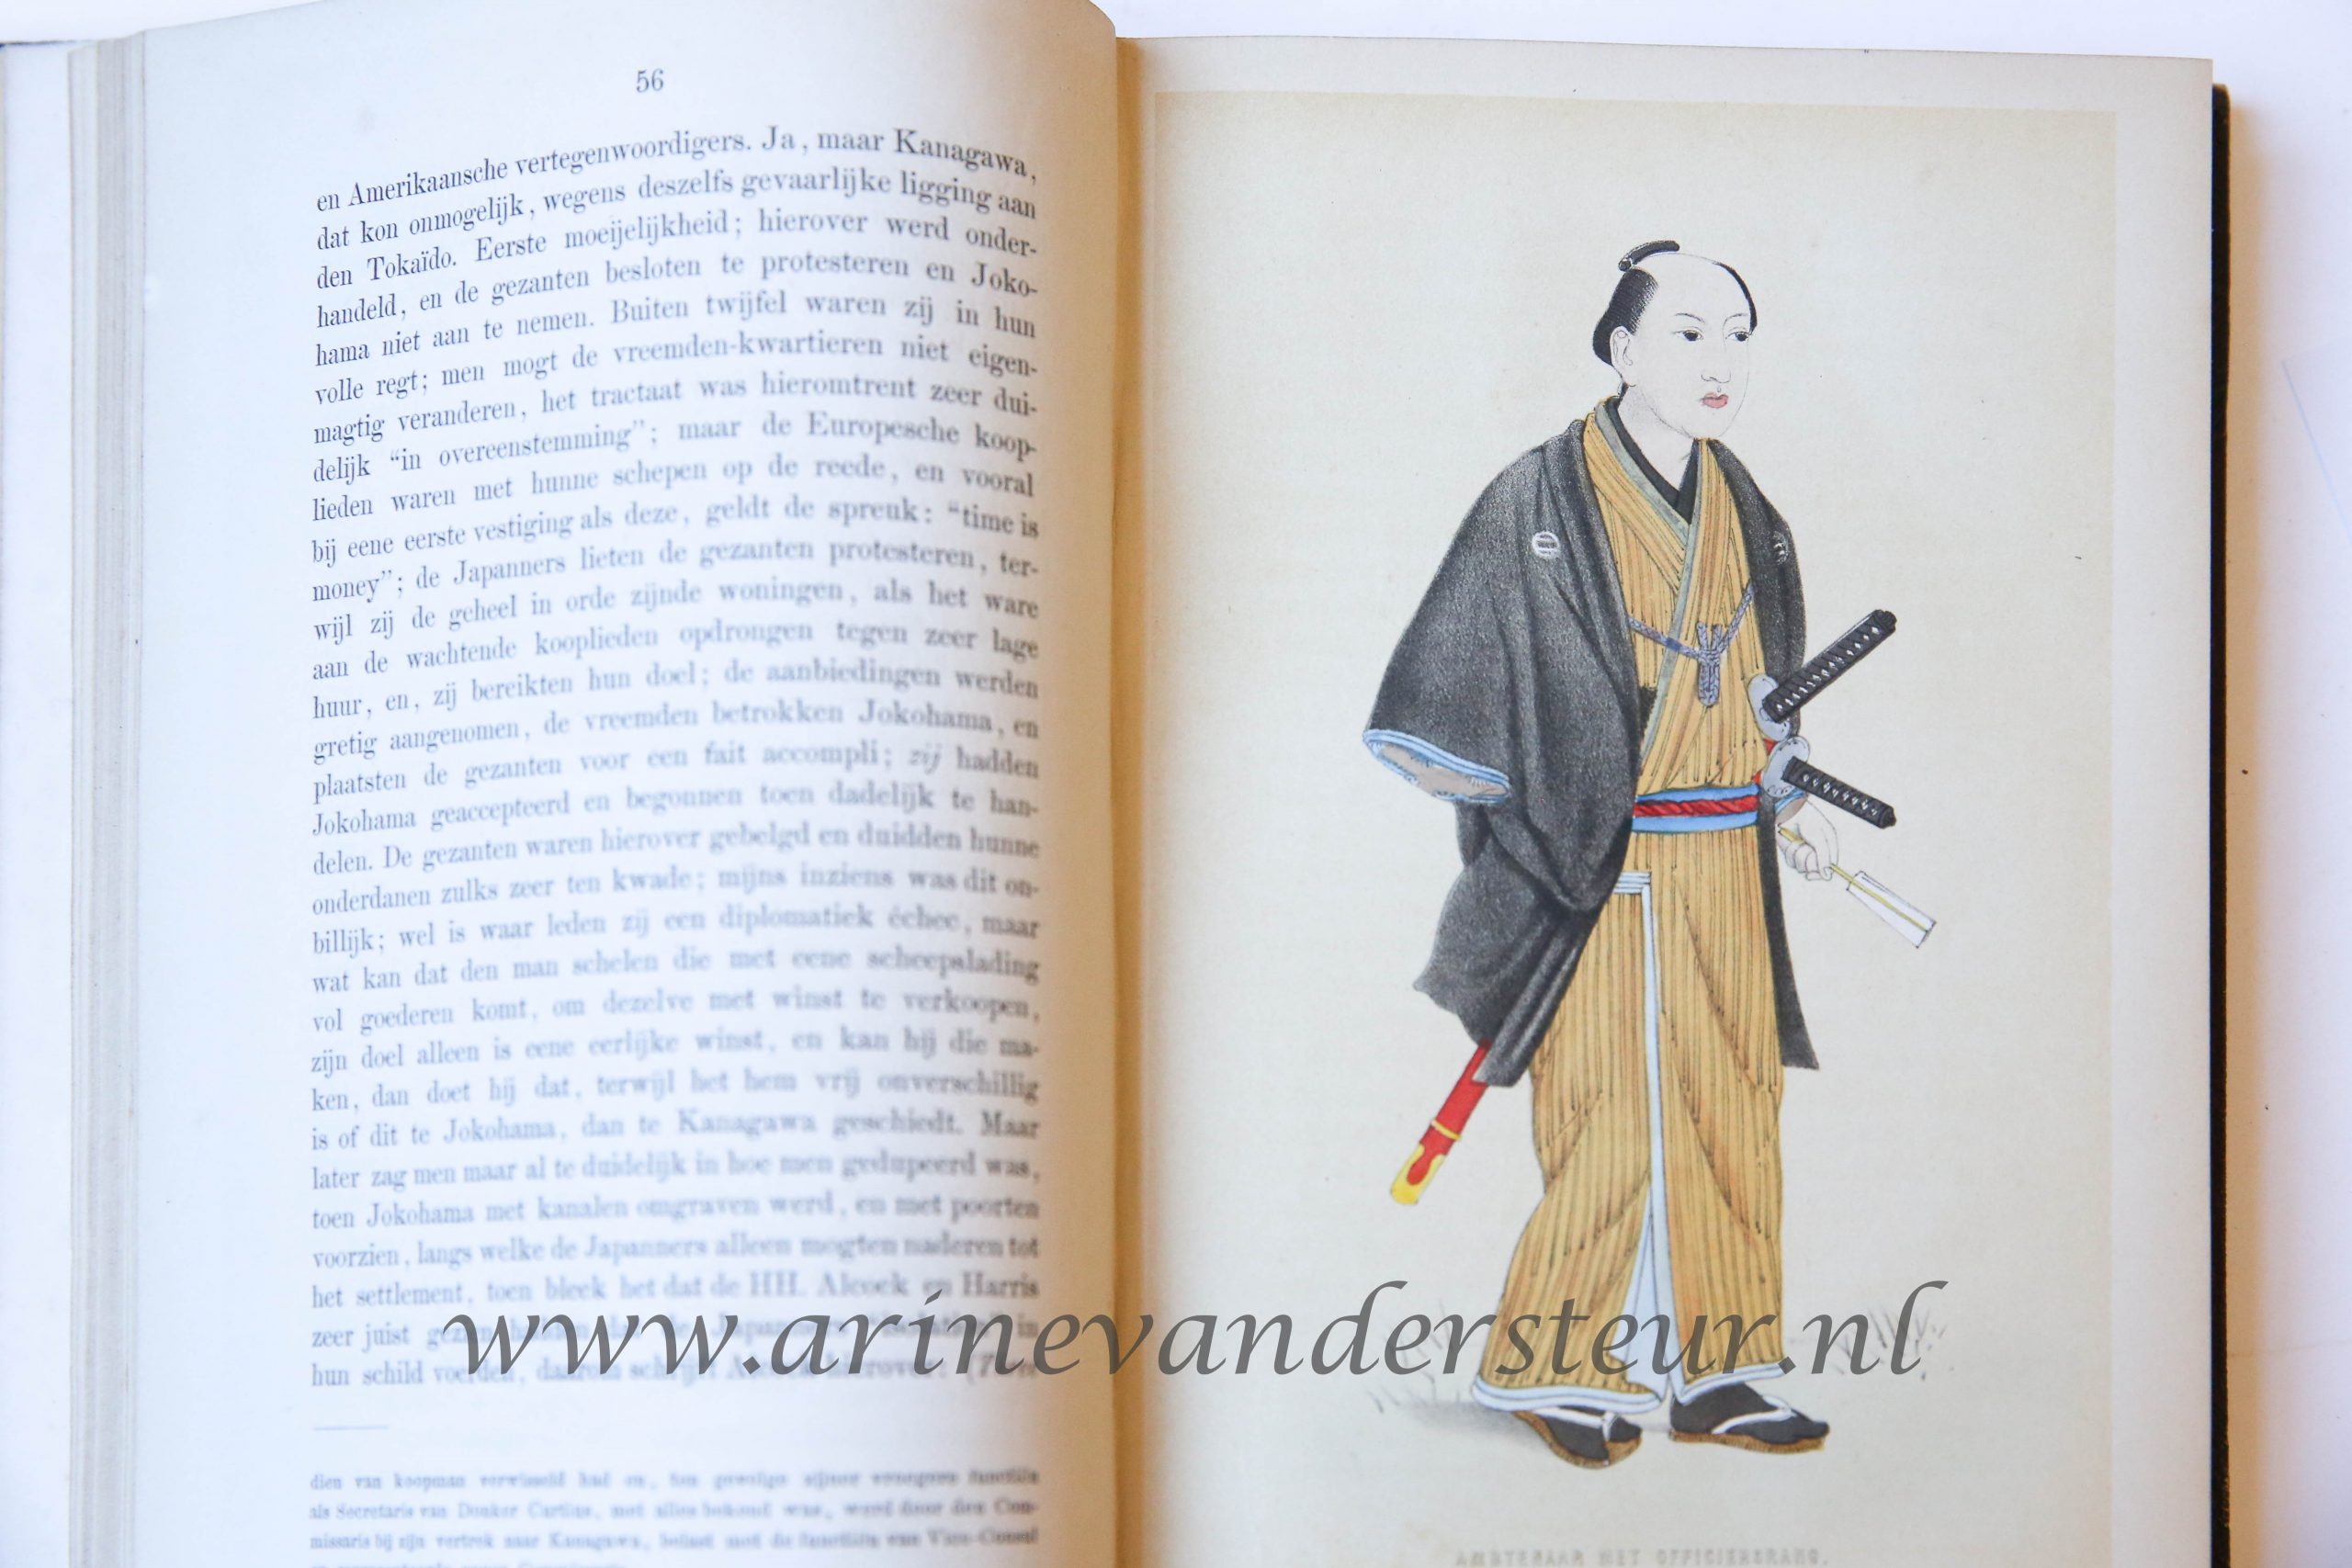 Vijf jaren in Japan. (1857-1863.). Bijdragen tot de kennis van het Japansche keizerrijk en zijne bevolking. 2 vols. Leiden, Van den Heuvell & Van Santen, 1867.